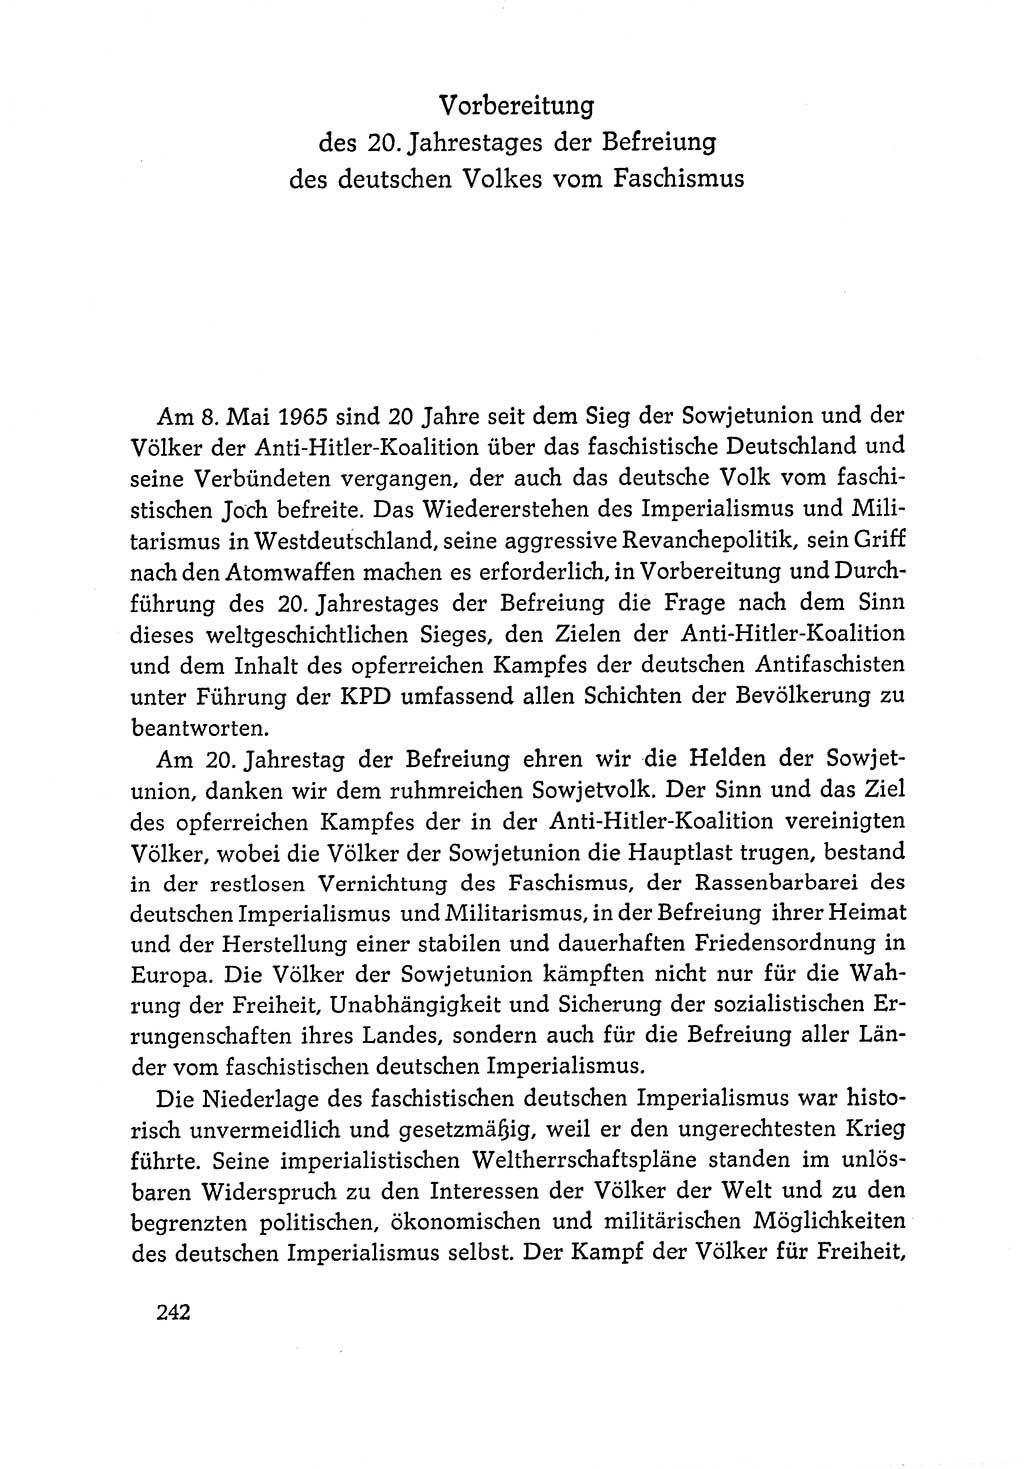 Dokumente der Sozialistischen Einheitspartei Deutschlands (SED) [Deutsche Demokratische Republik (DDR)] 1964-1965, Seite 242 (Dok. SED DDR 1964-1965, S. 242)